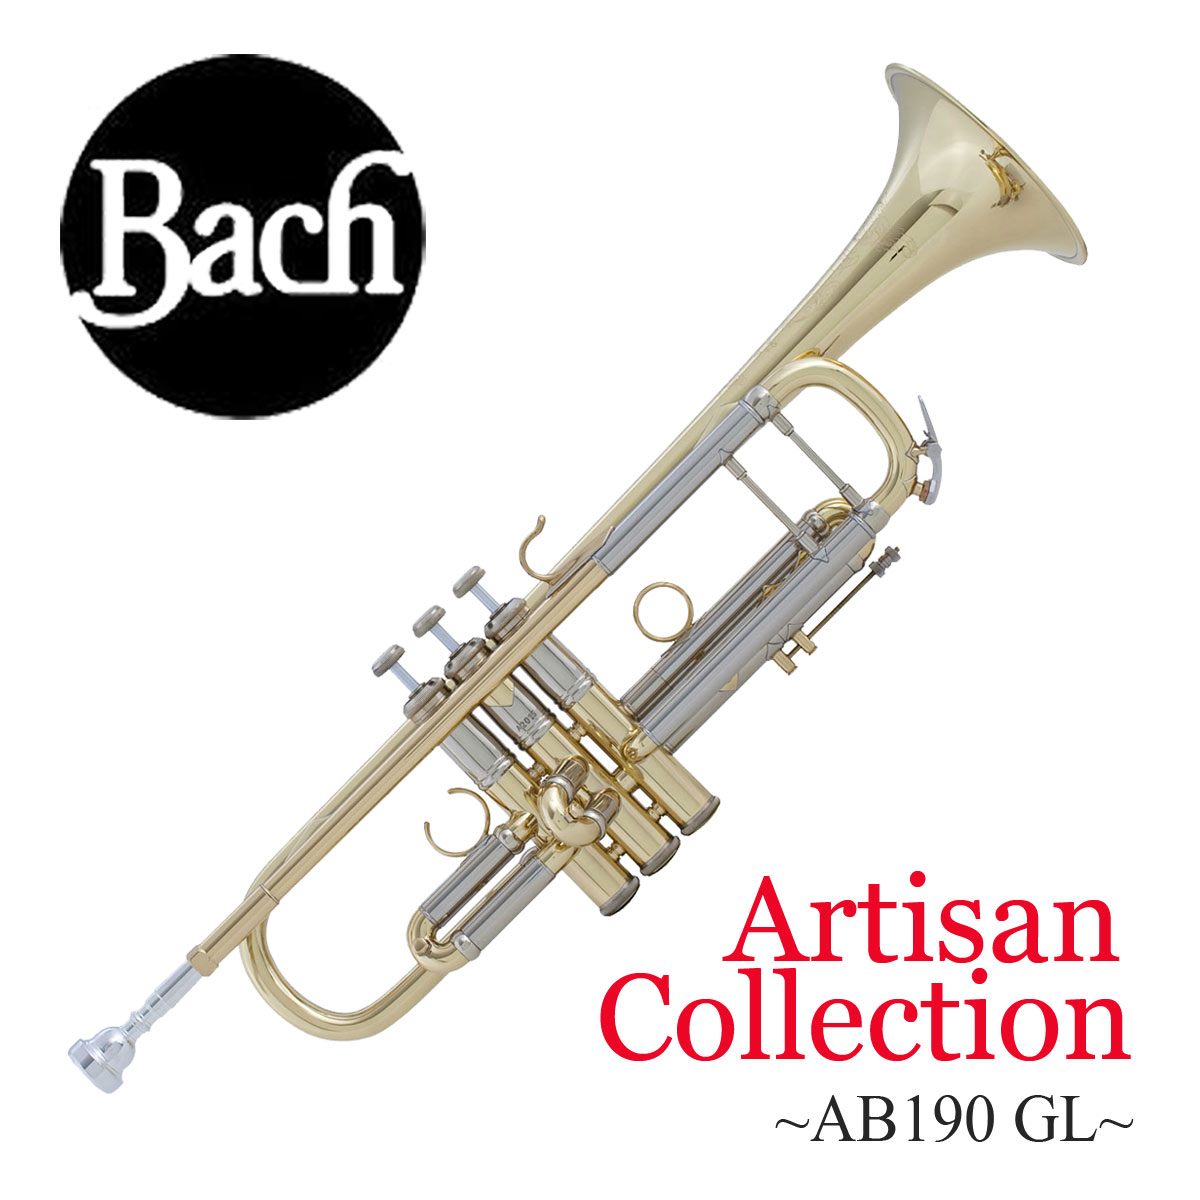 Bach / バック Artisan Collection AB190 GL アルティザン イエローブラスベル ラッカー仕上げ トランペット B♭  【お取り寄せ】 | イシバシ楽器